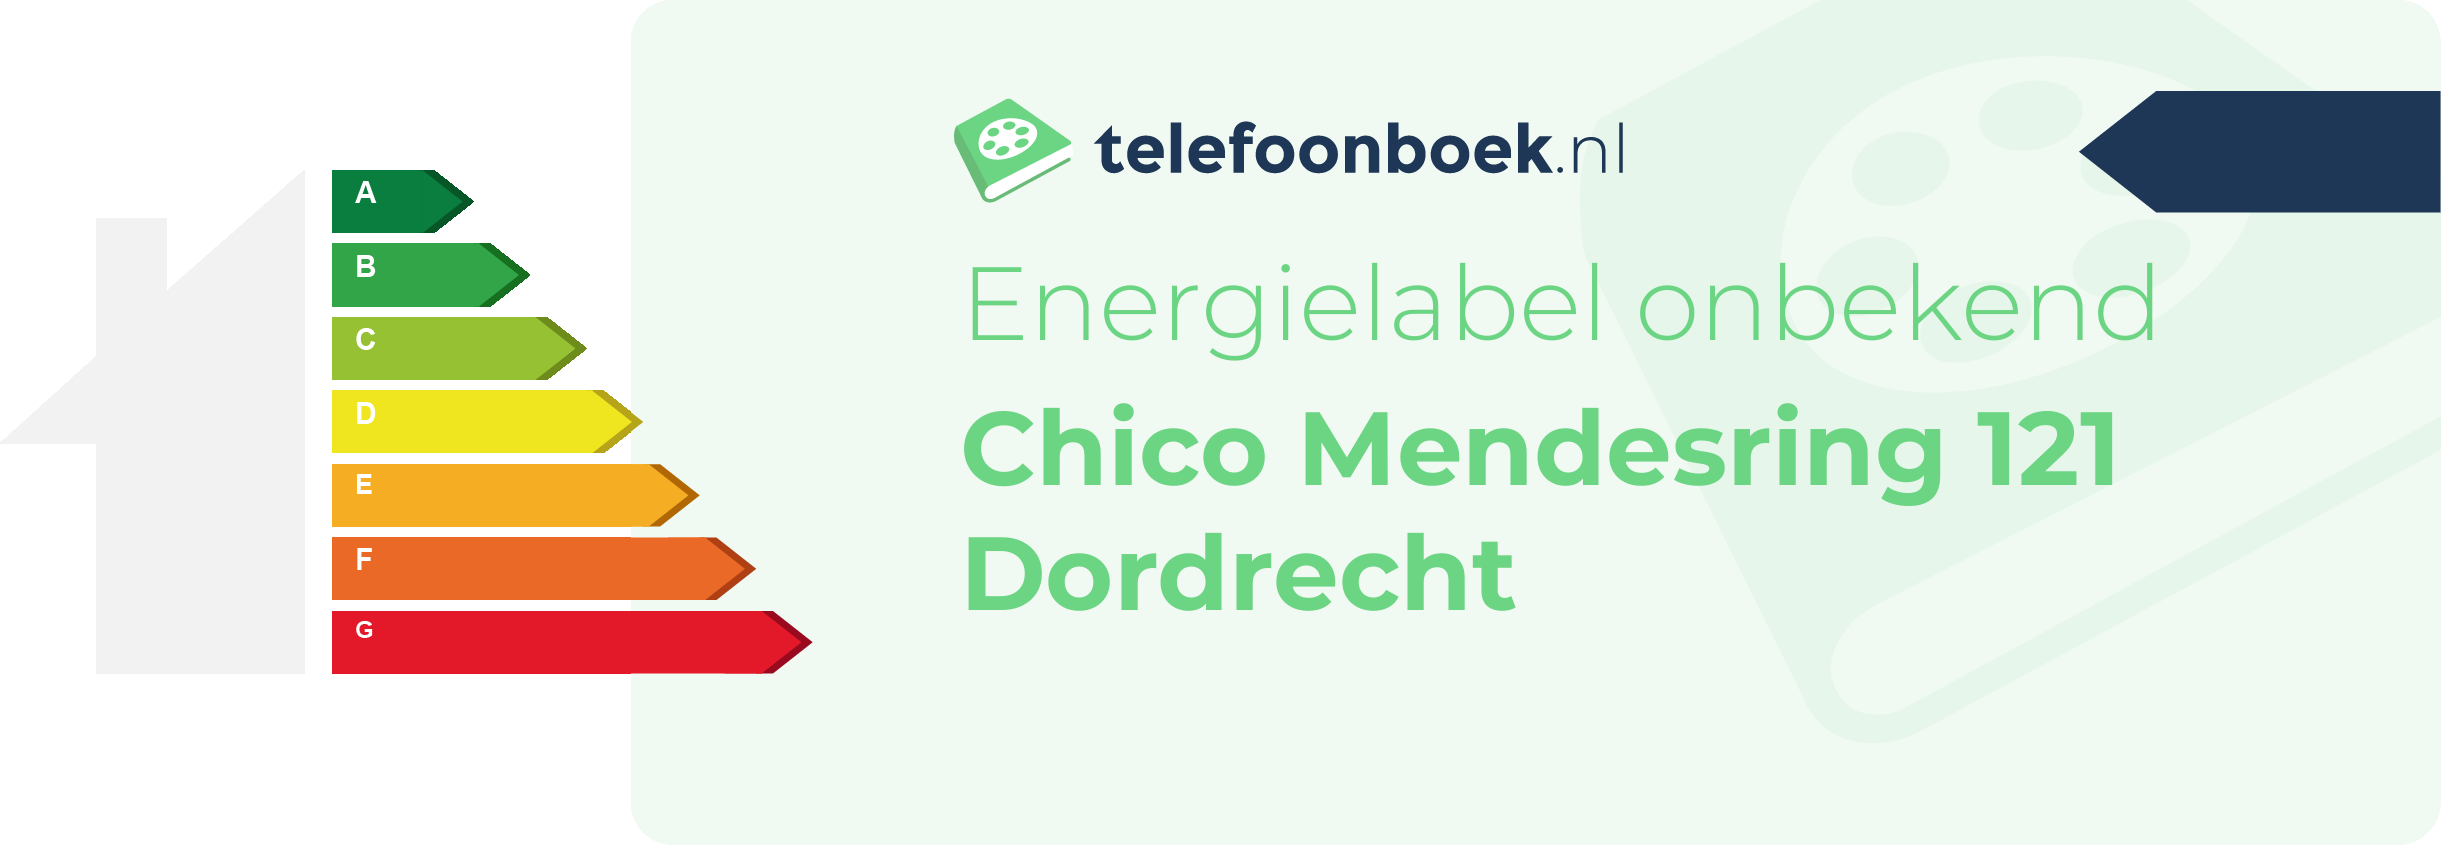 Energielabel Chico Mendesring 121 Dordrecht